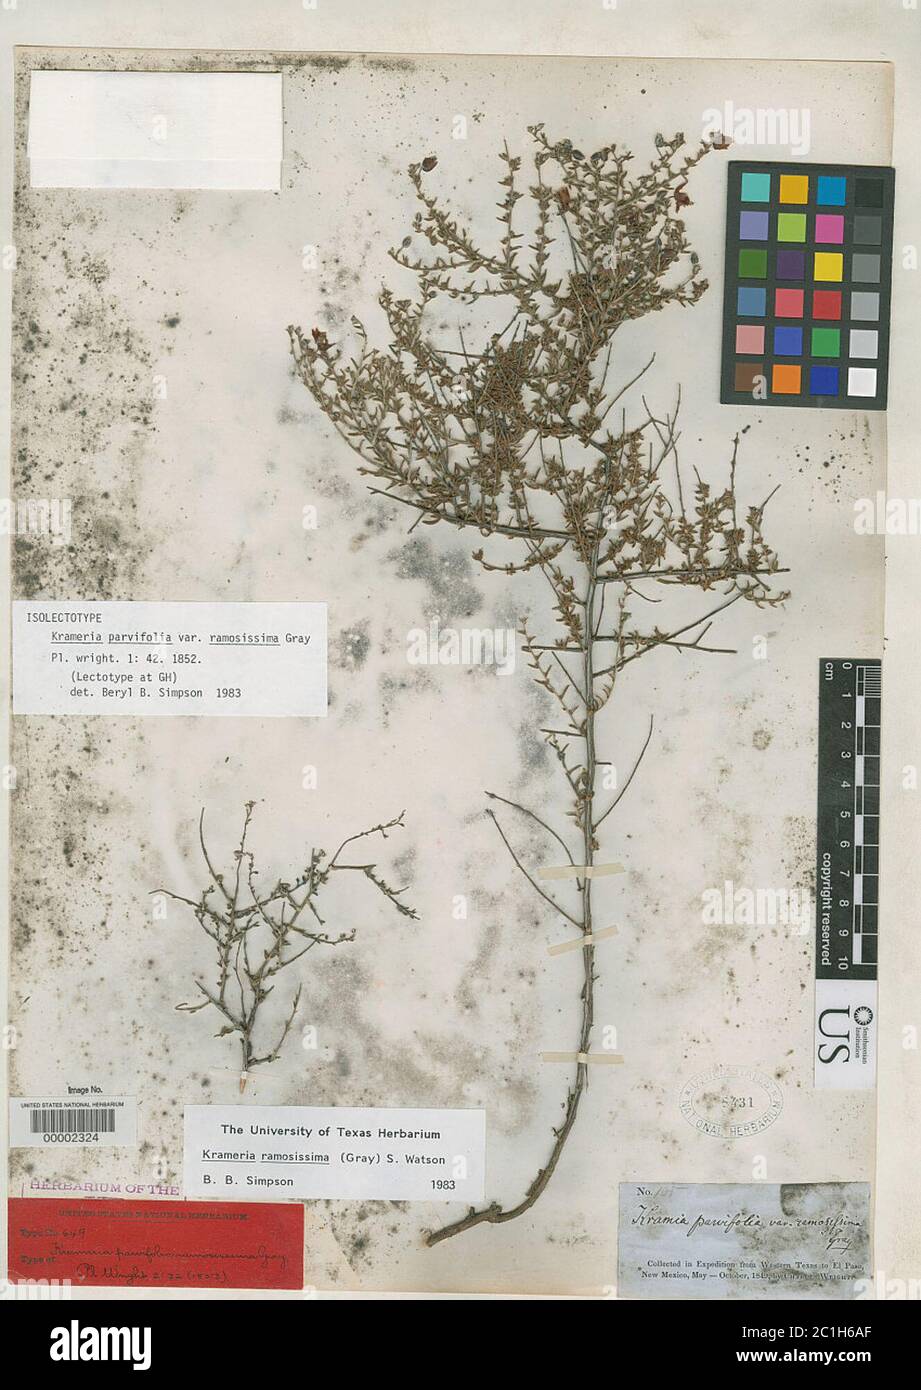 Krameria parvifolia var ramosissima A Gray Krameria parvifolia var ramosissima A Gray. Stock Photo